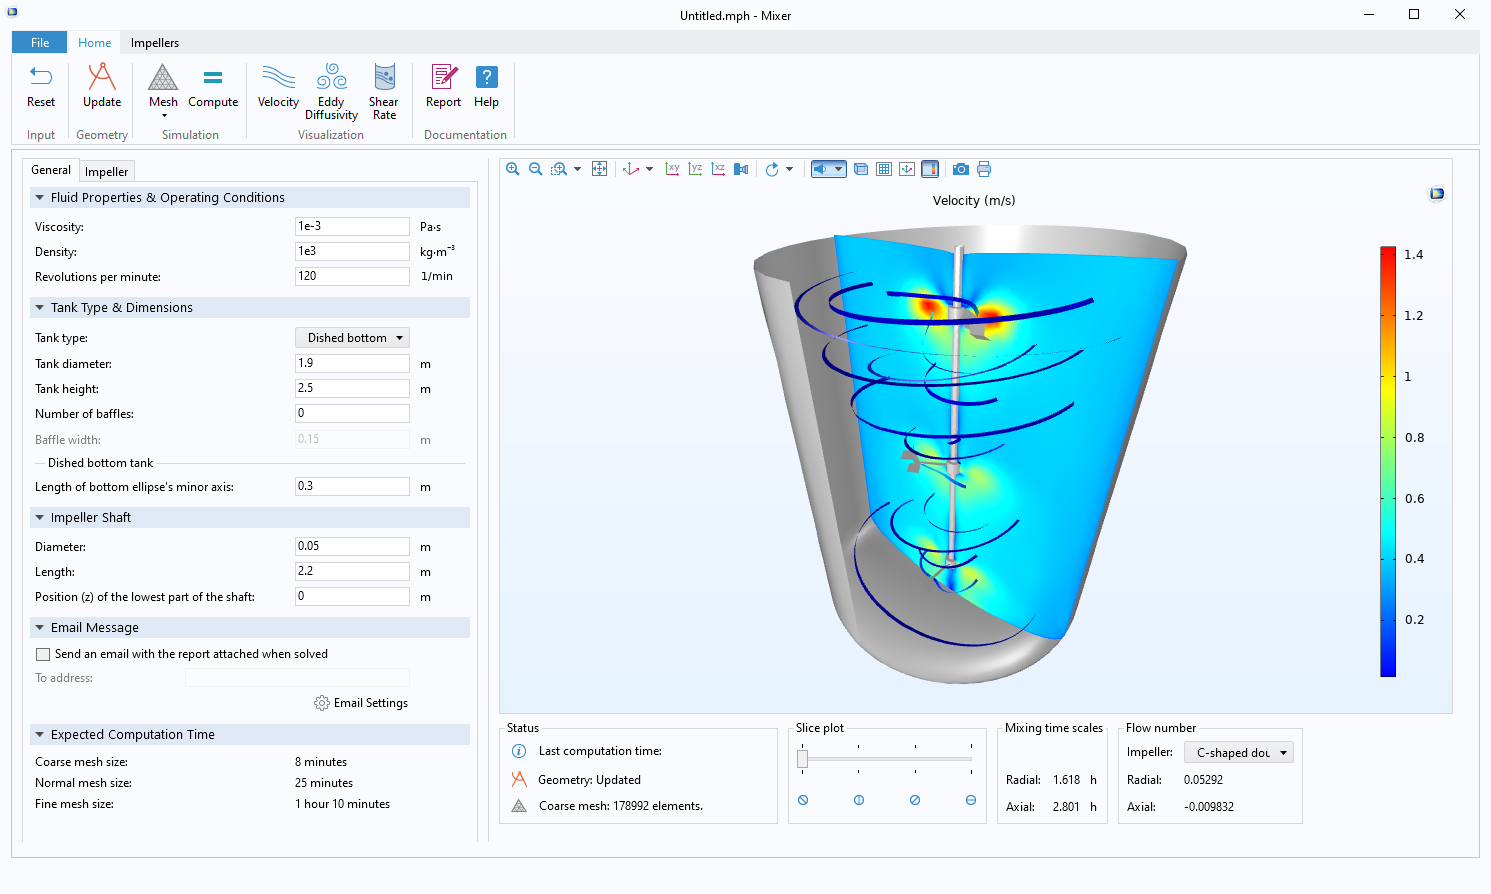 Une application de simulation compilée pour analyser différents designs de mélangeurs, qui comprend un ruban de commandes en haut, des champs de saisie à gauche et les résultats de la simulation à droite.